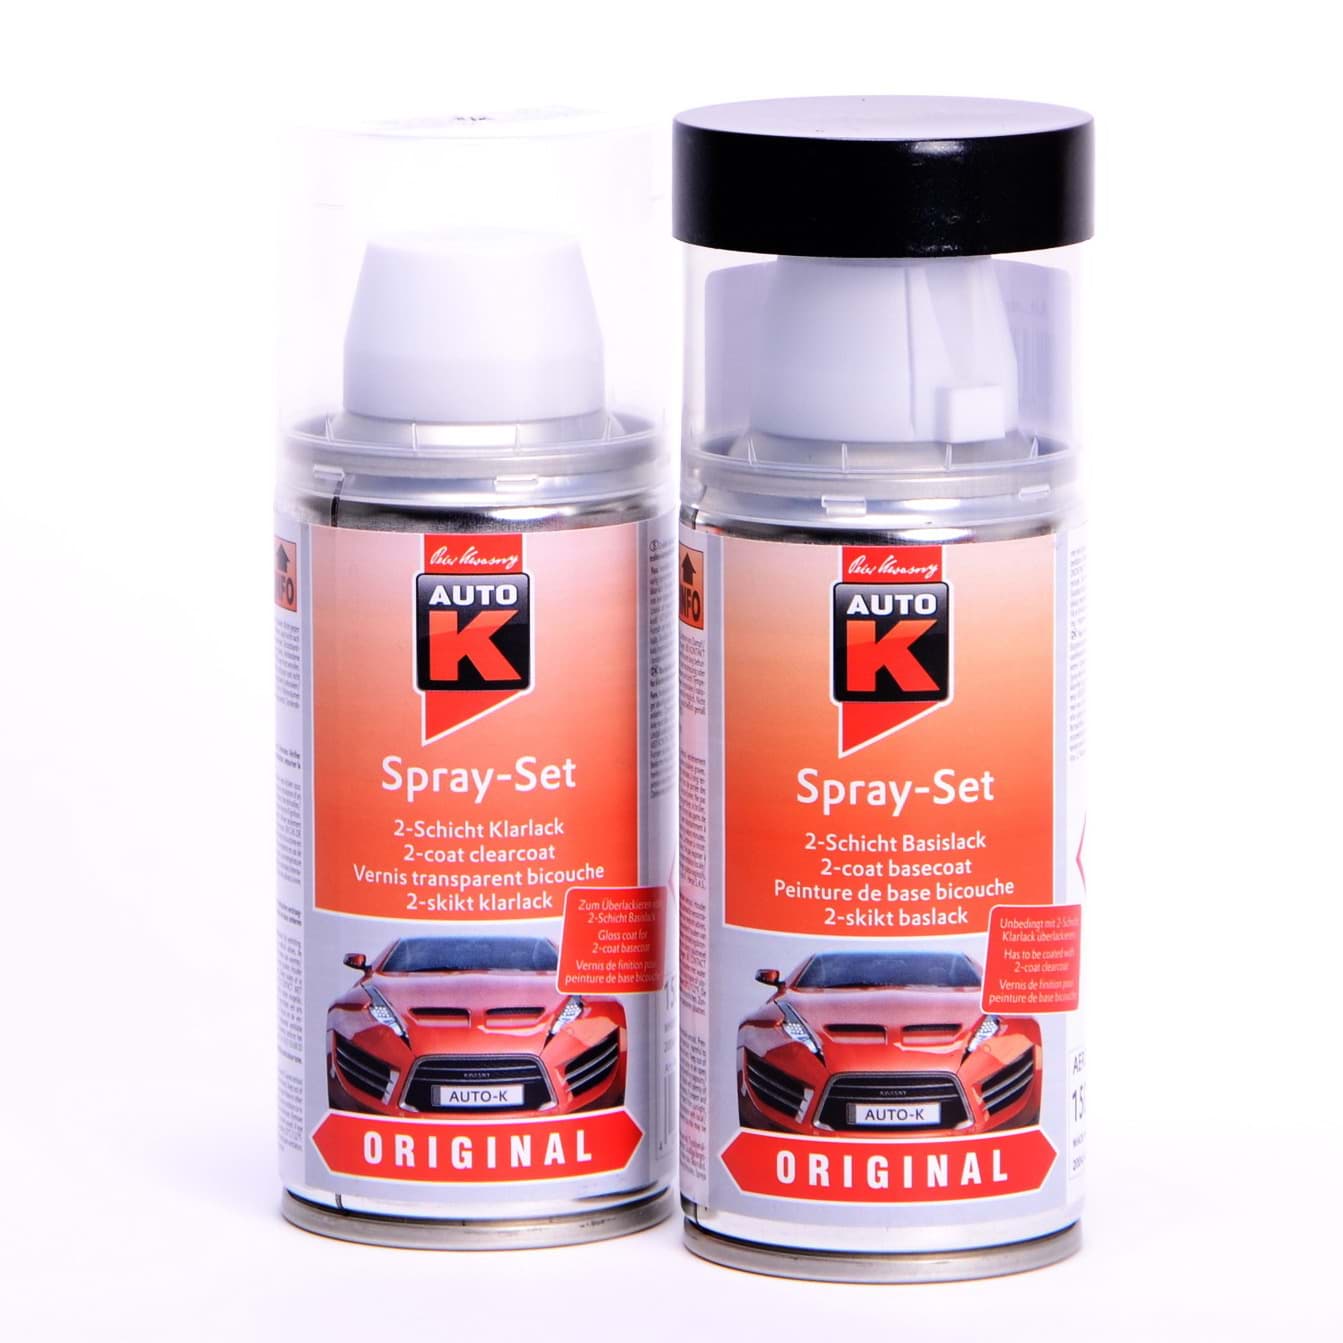 Afbeelding van Auto-K Spray-Set Autolack für Opel 290 Nordkap met 21424